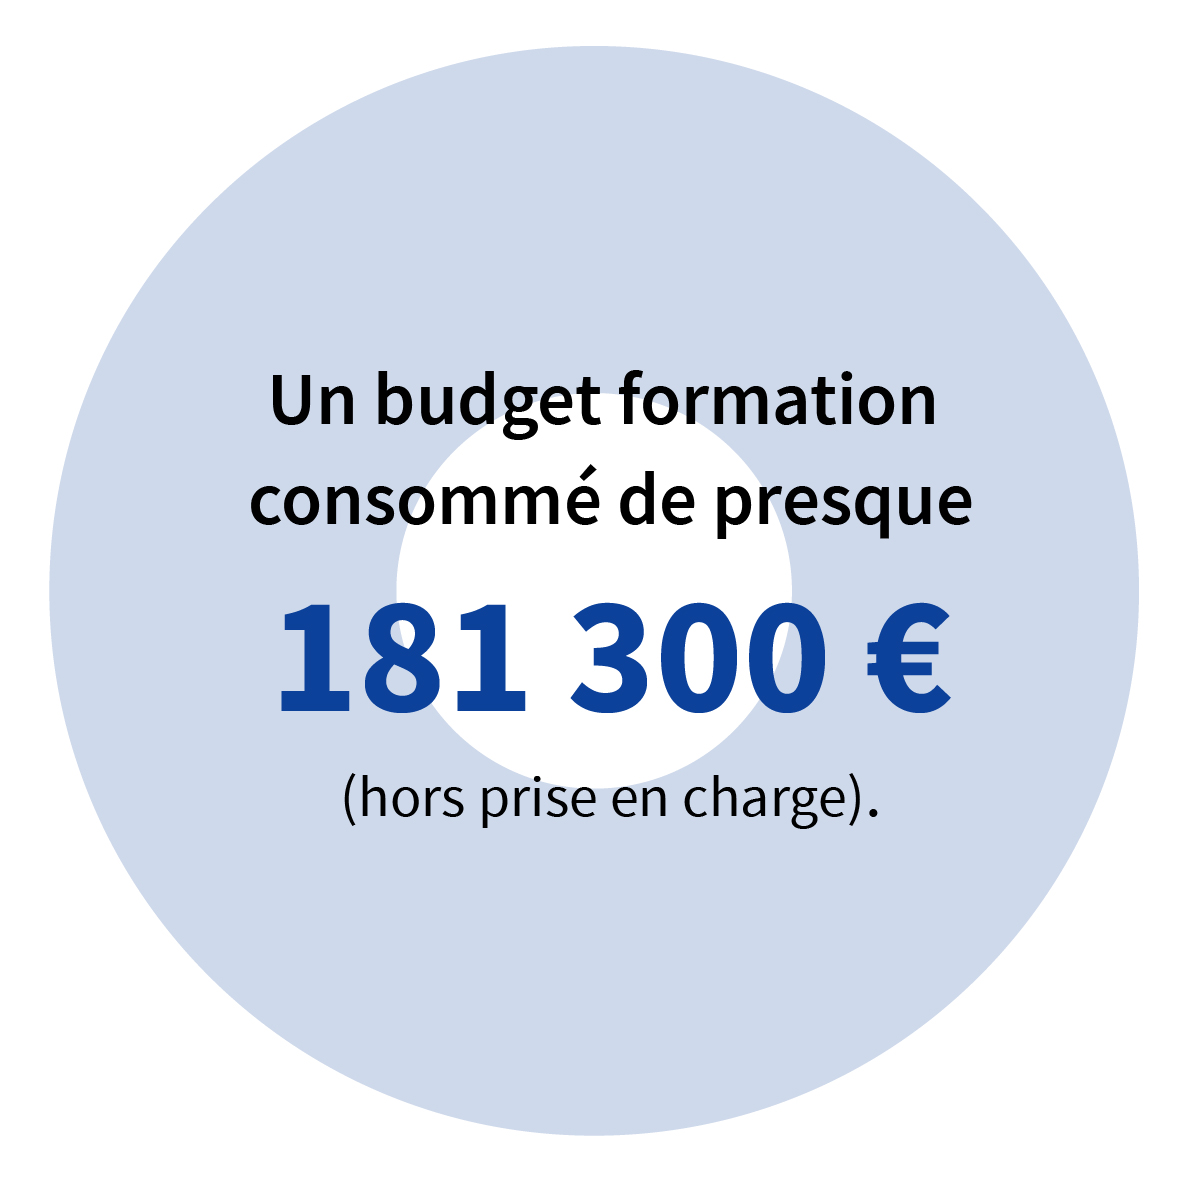 Un budget formation consommé de presque 181 300 € (hors prise en charge).